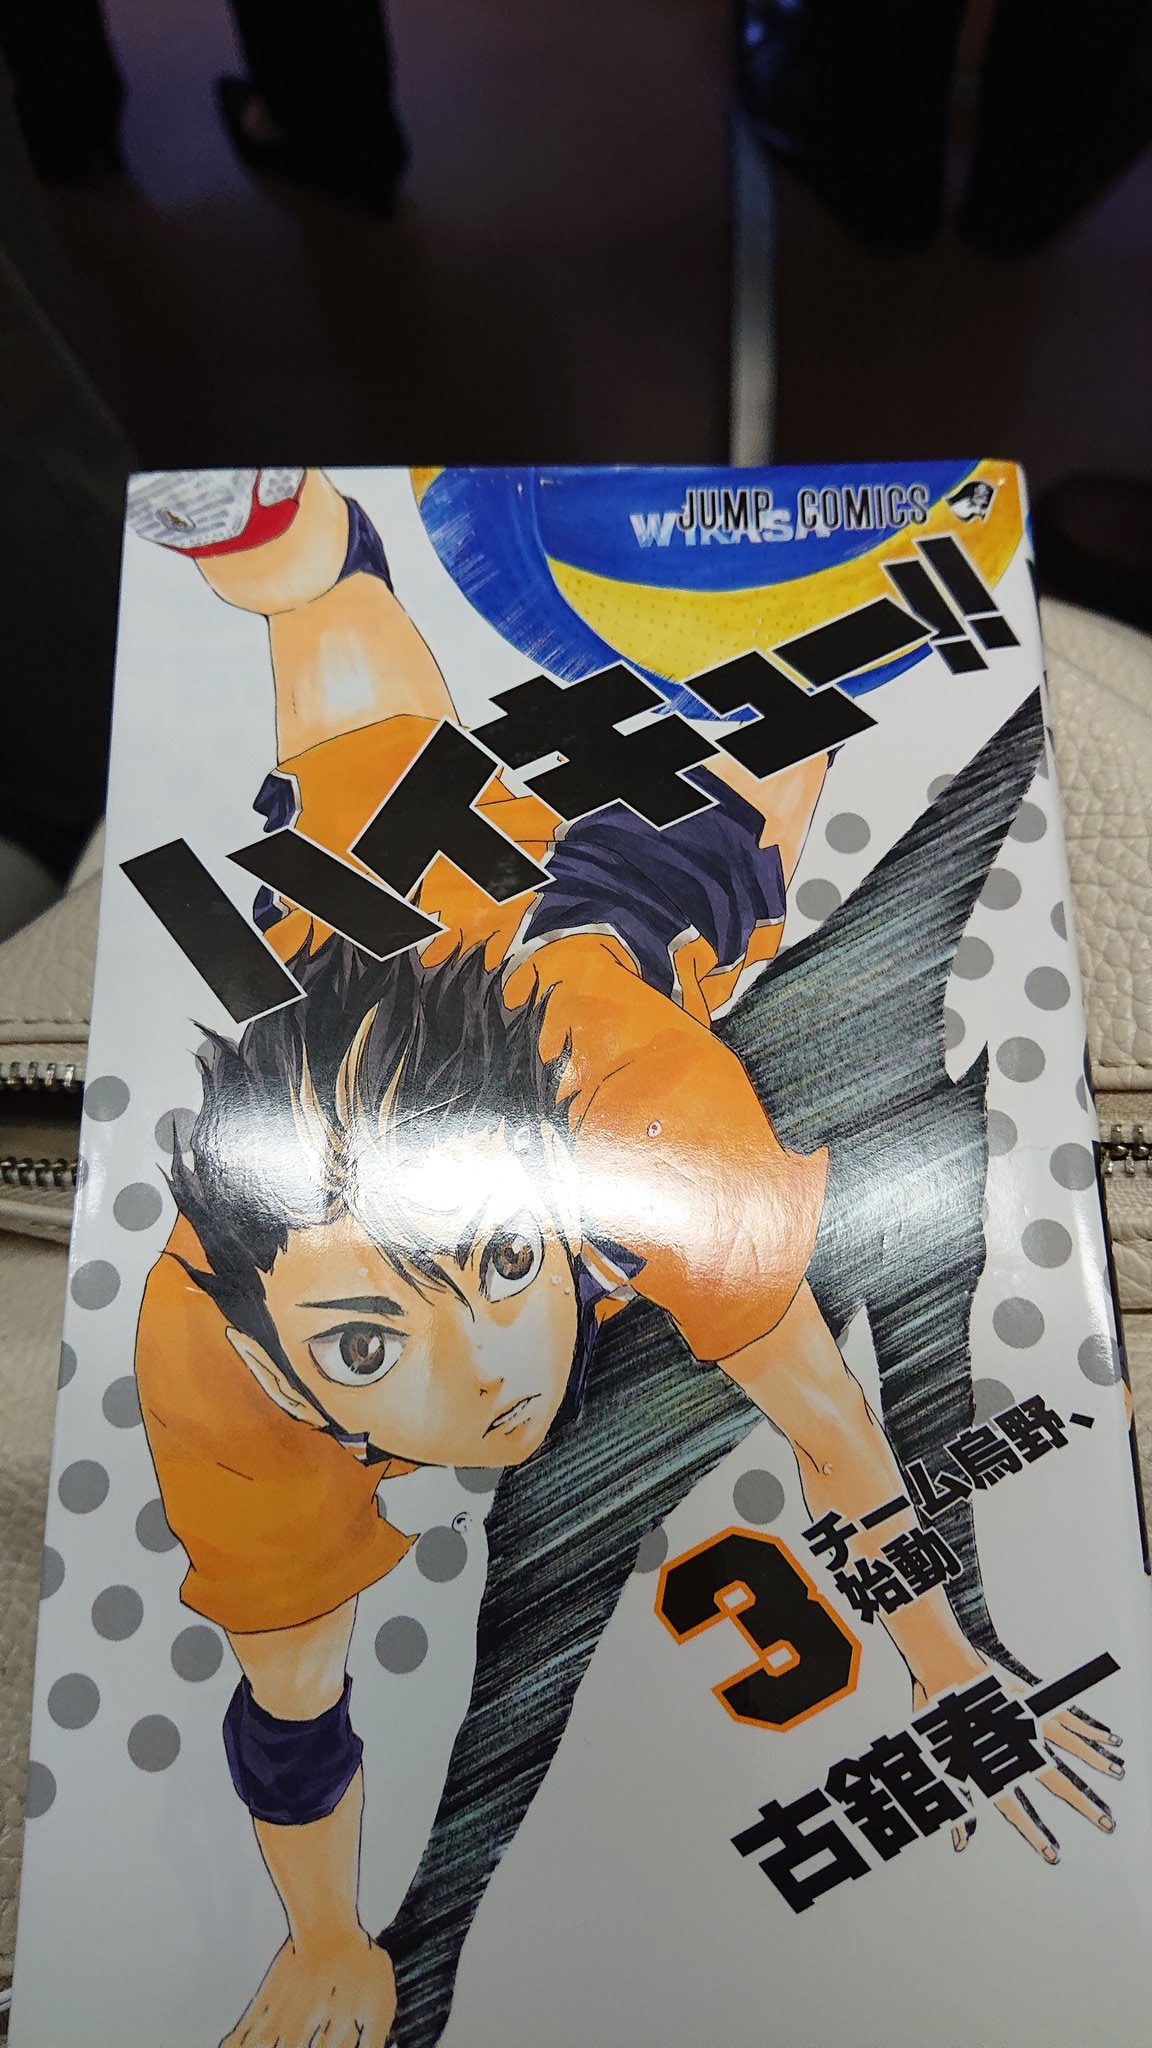 ハイキュー 3巻を完全無料で読める Zip Rar 漫画村の代役発見 Manga Channel